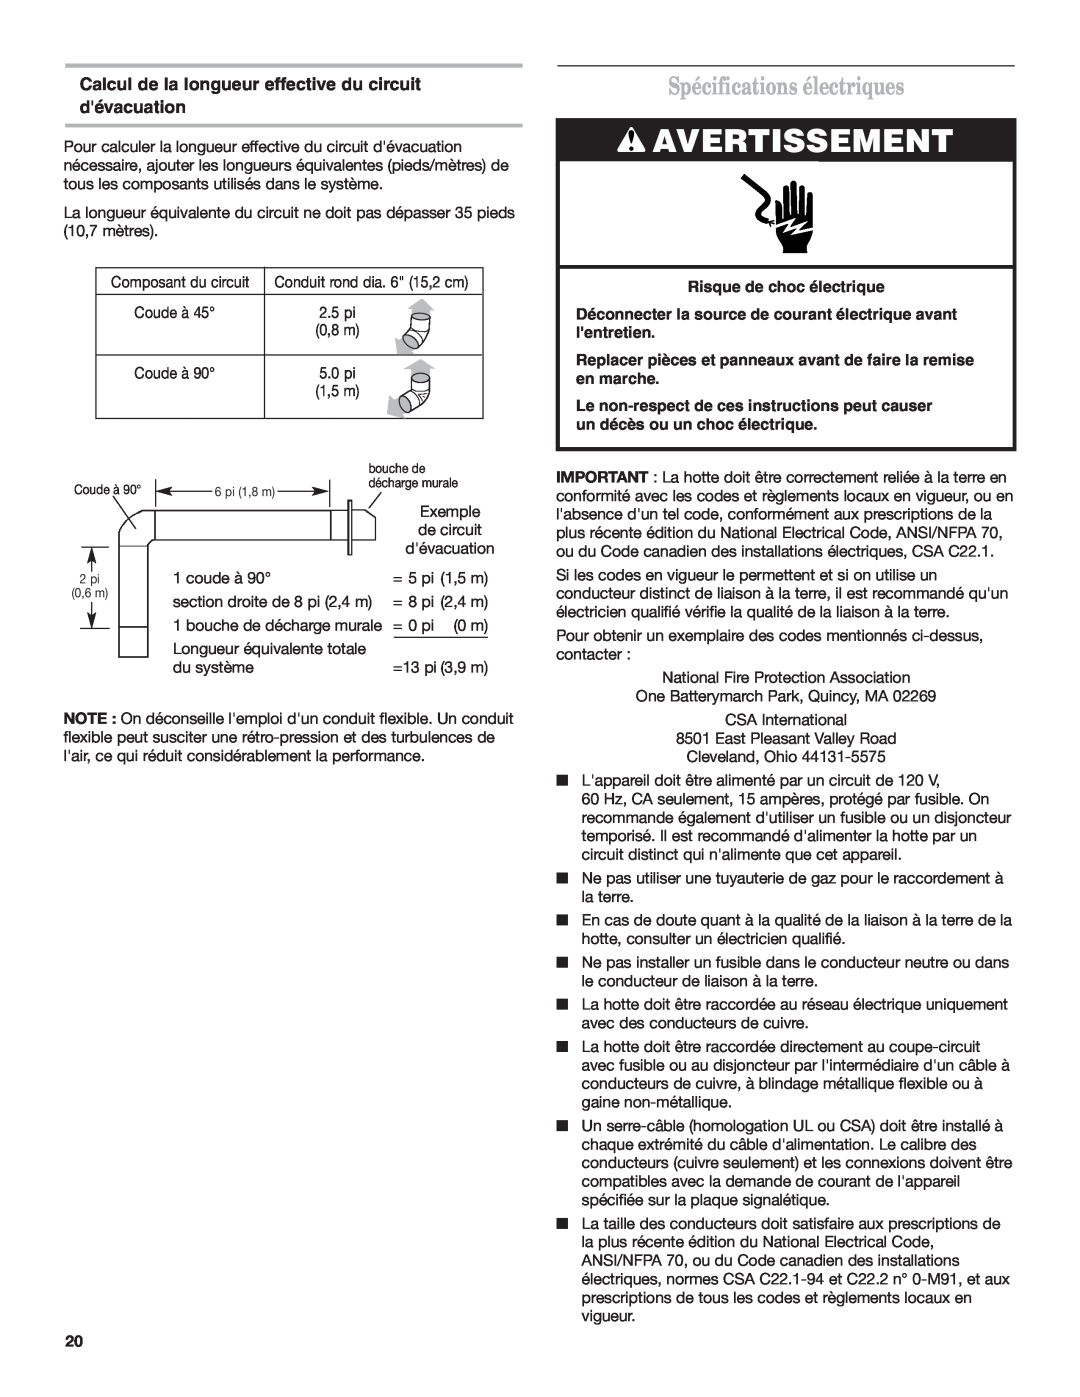 KitchenAid 9760425A Avertissement, Spécifications électriques, Calcul de la longueur effective du circuit dévacuation 